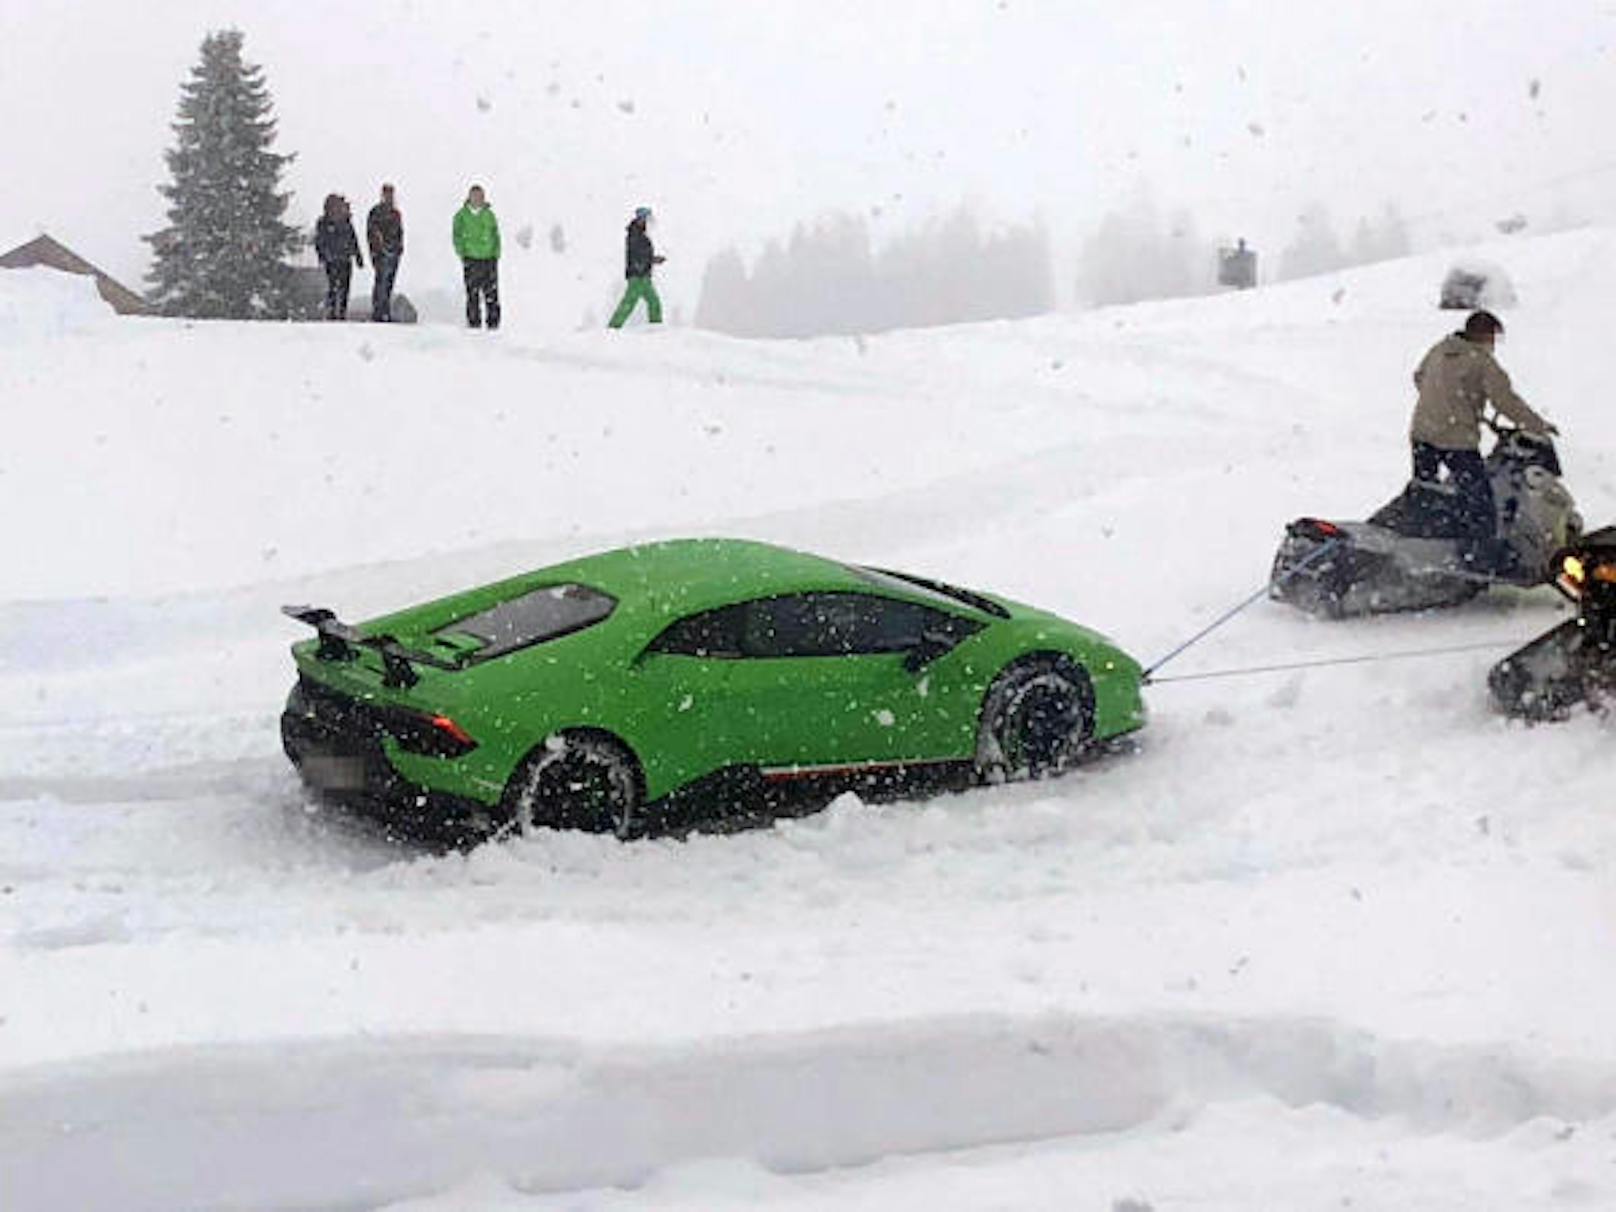 Doch dann blieb der grüne Sportwagen im Schnee stecken, so ein Leser-Reporter.